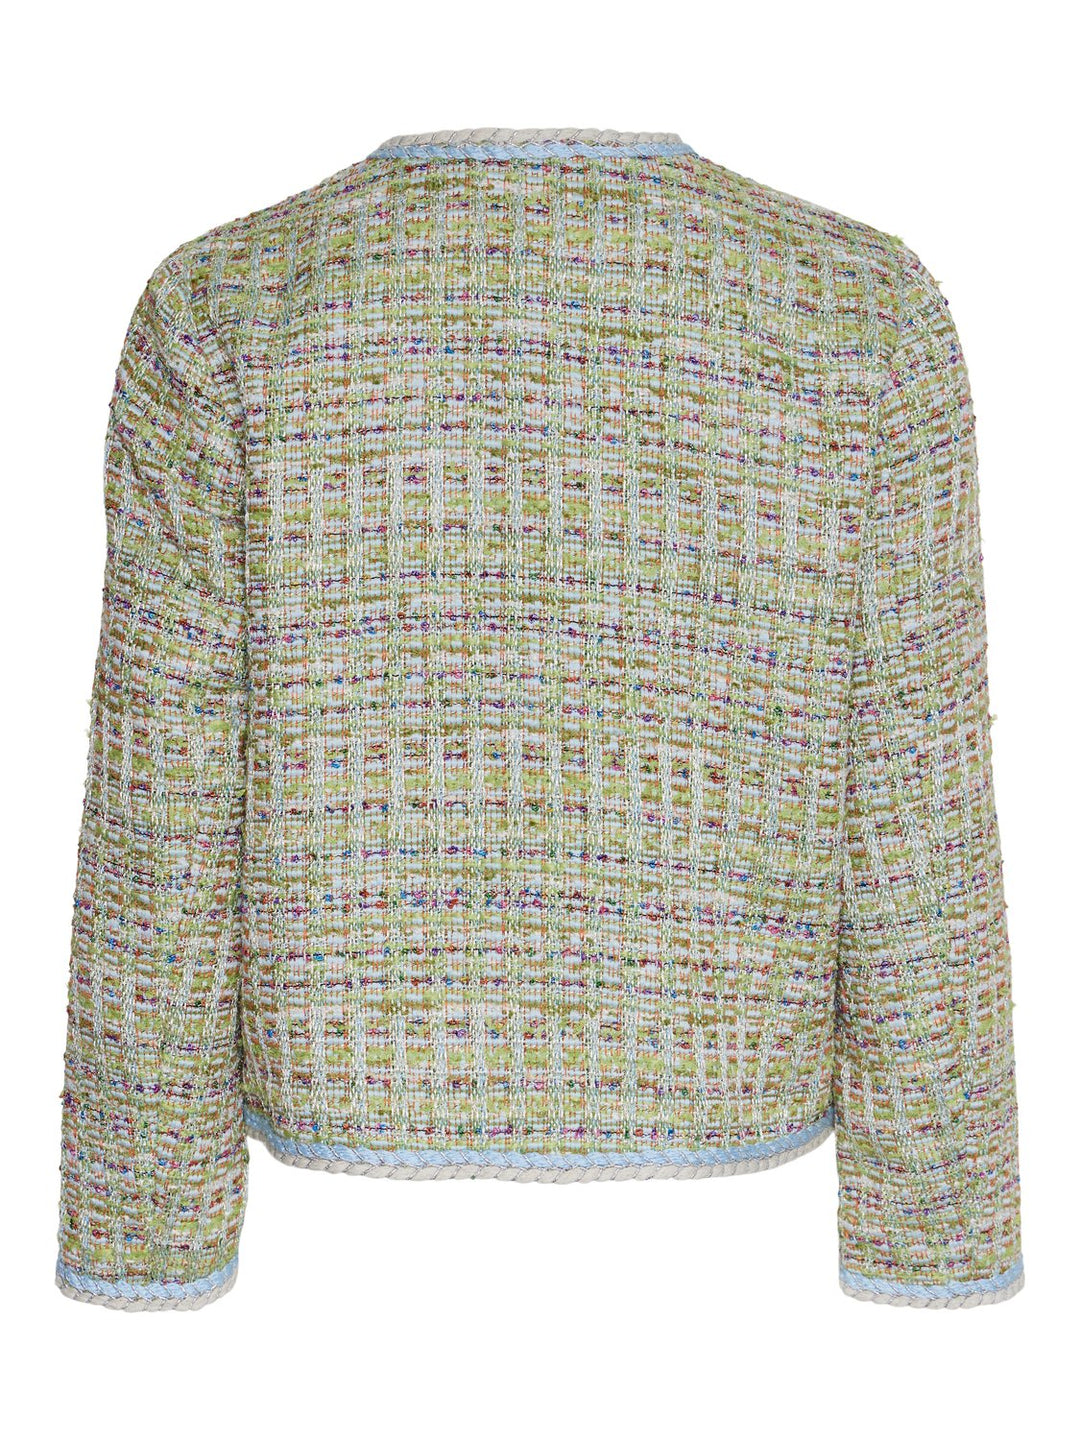 Yastweedsta 7/8 Jacket Omphalodes Multicolour | Yttertøy | Smuk - Dameklær på nett